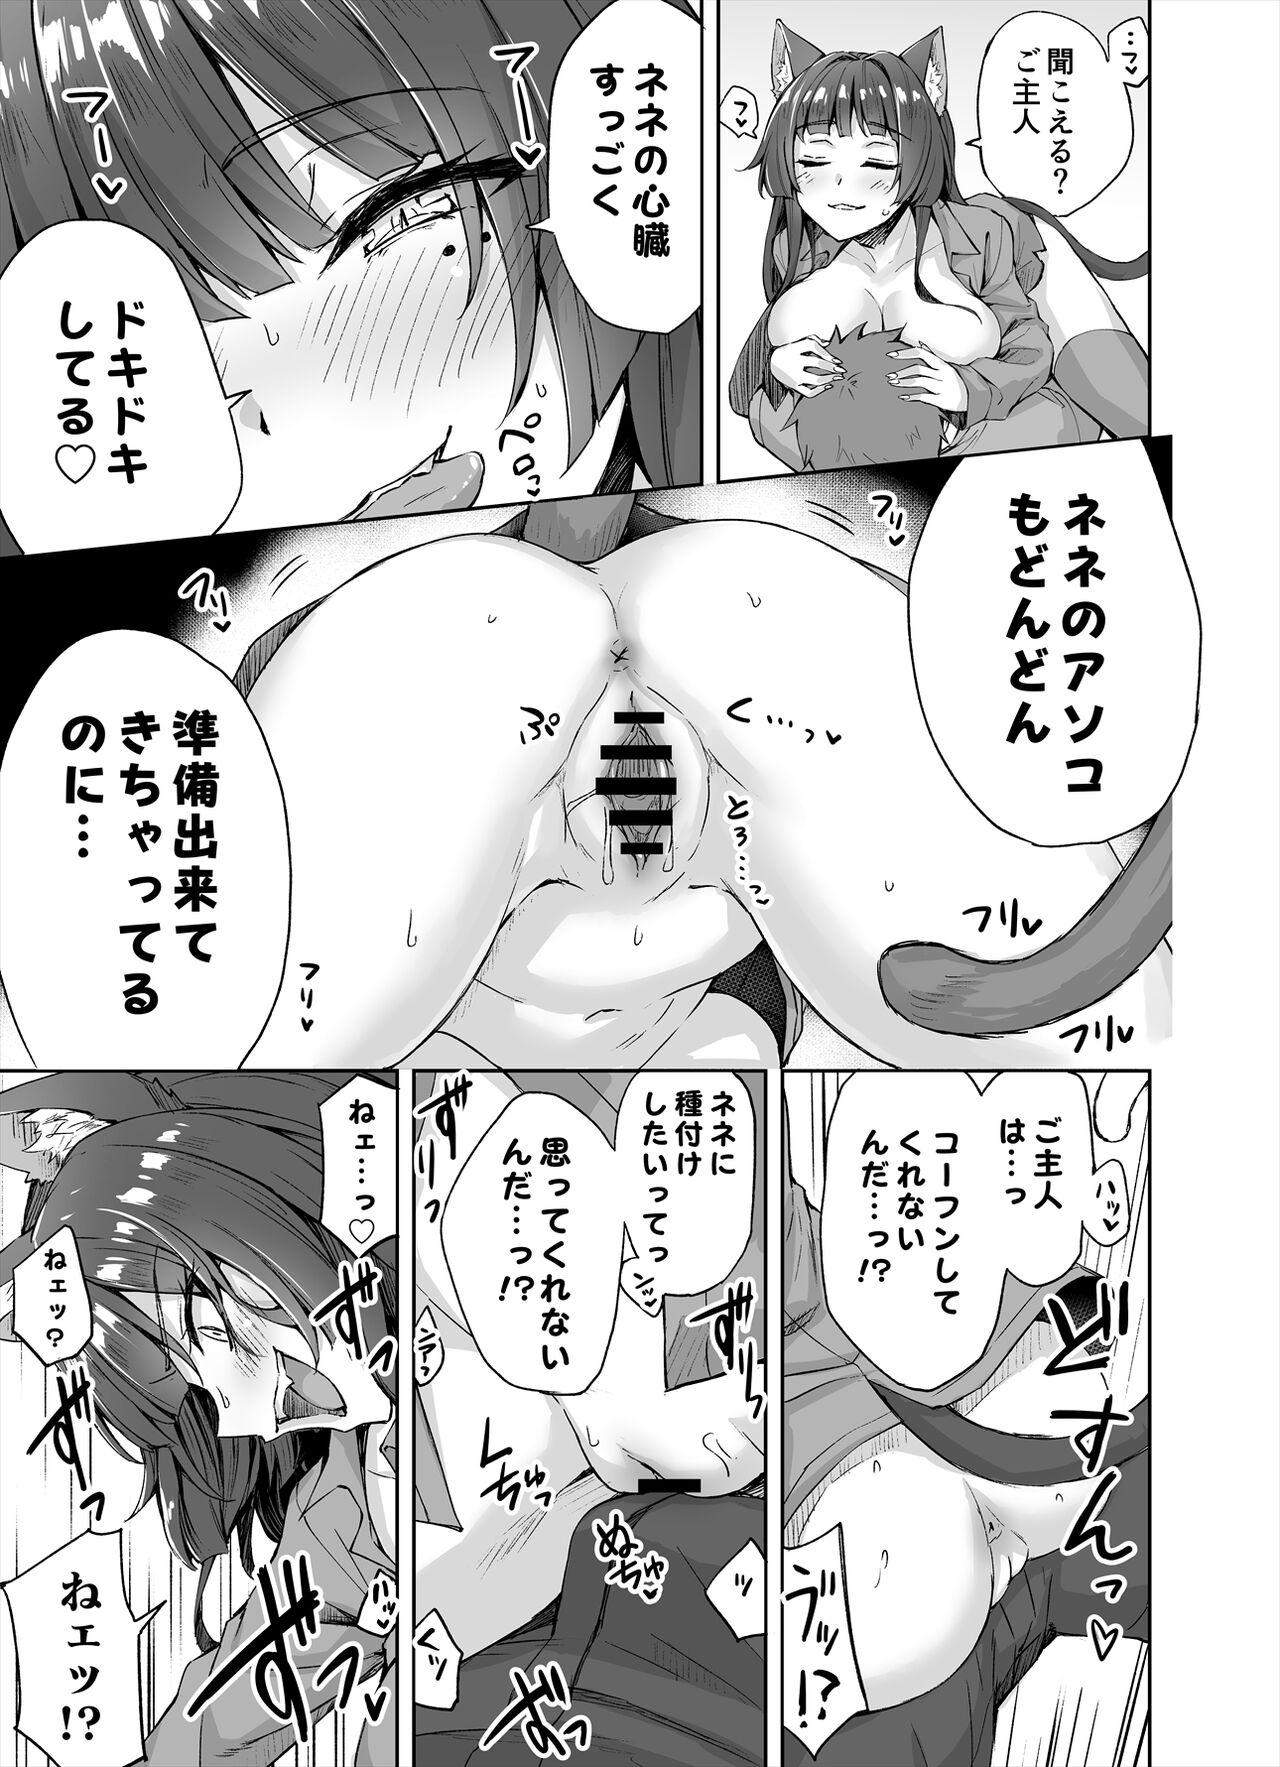 [Kotatsu] Yandere-kai Neko-chan Seijin Manga #01 3